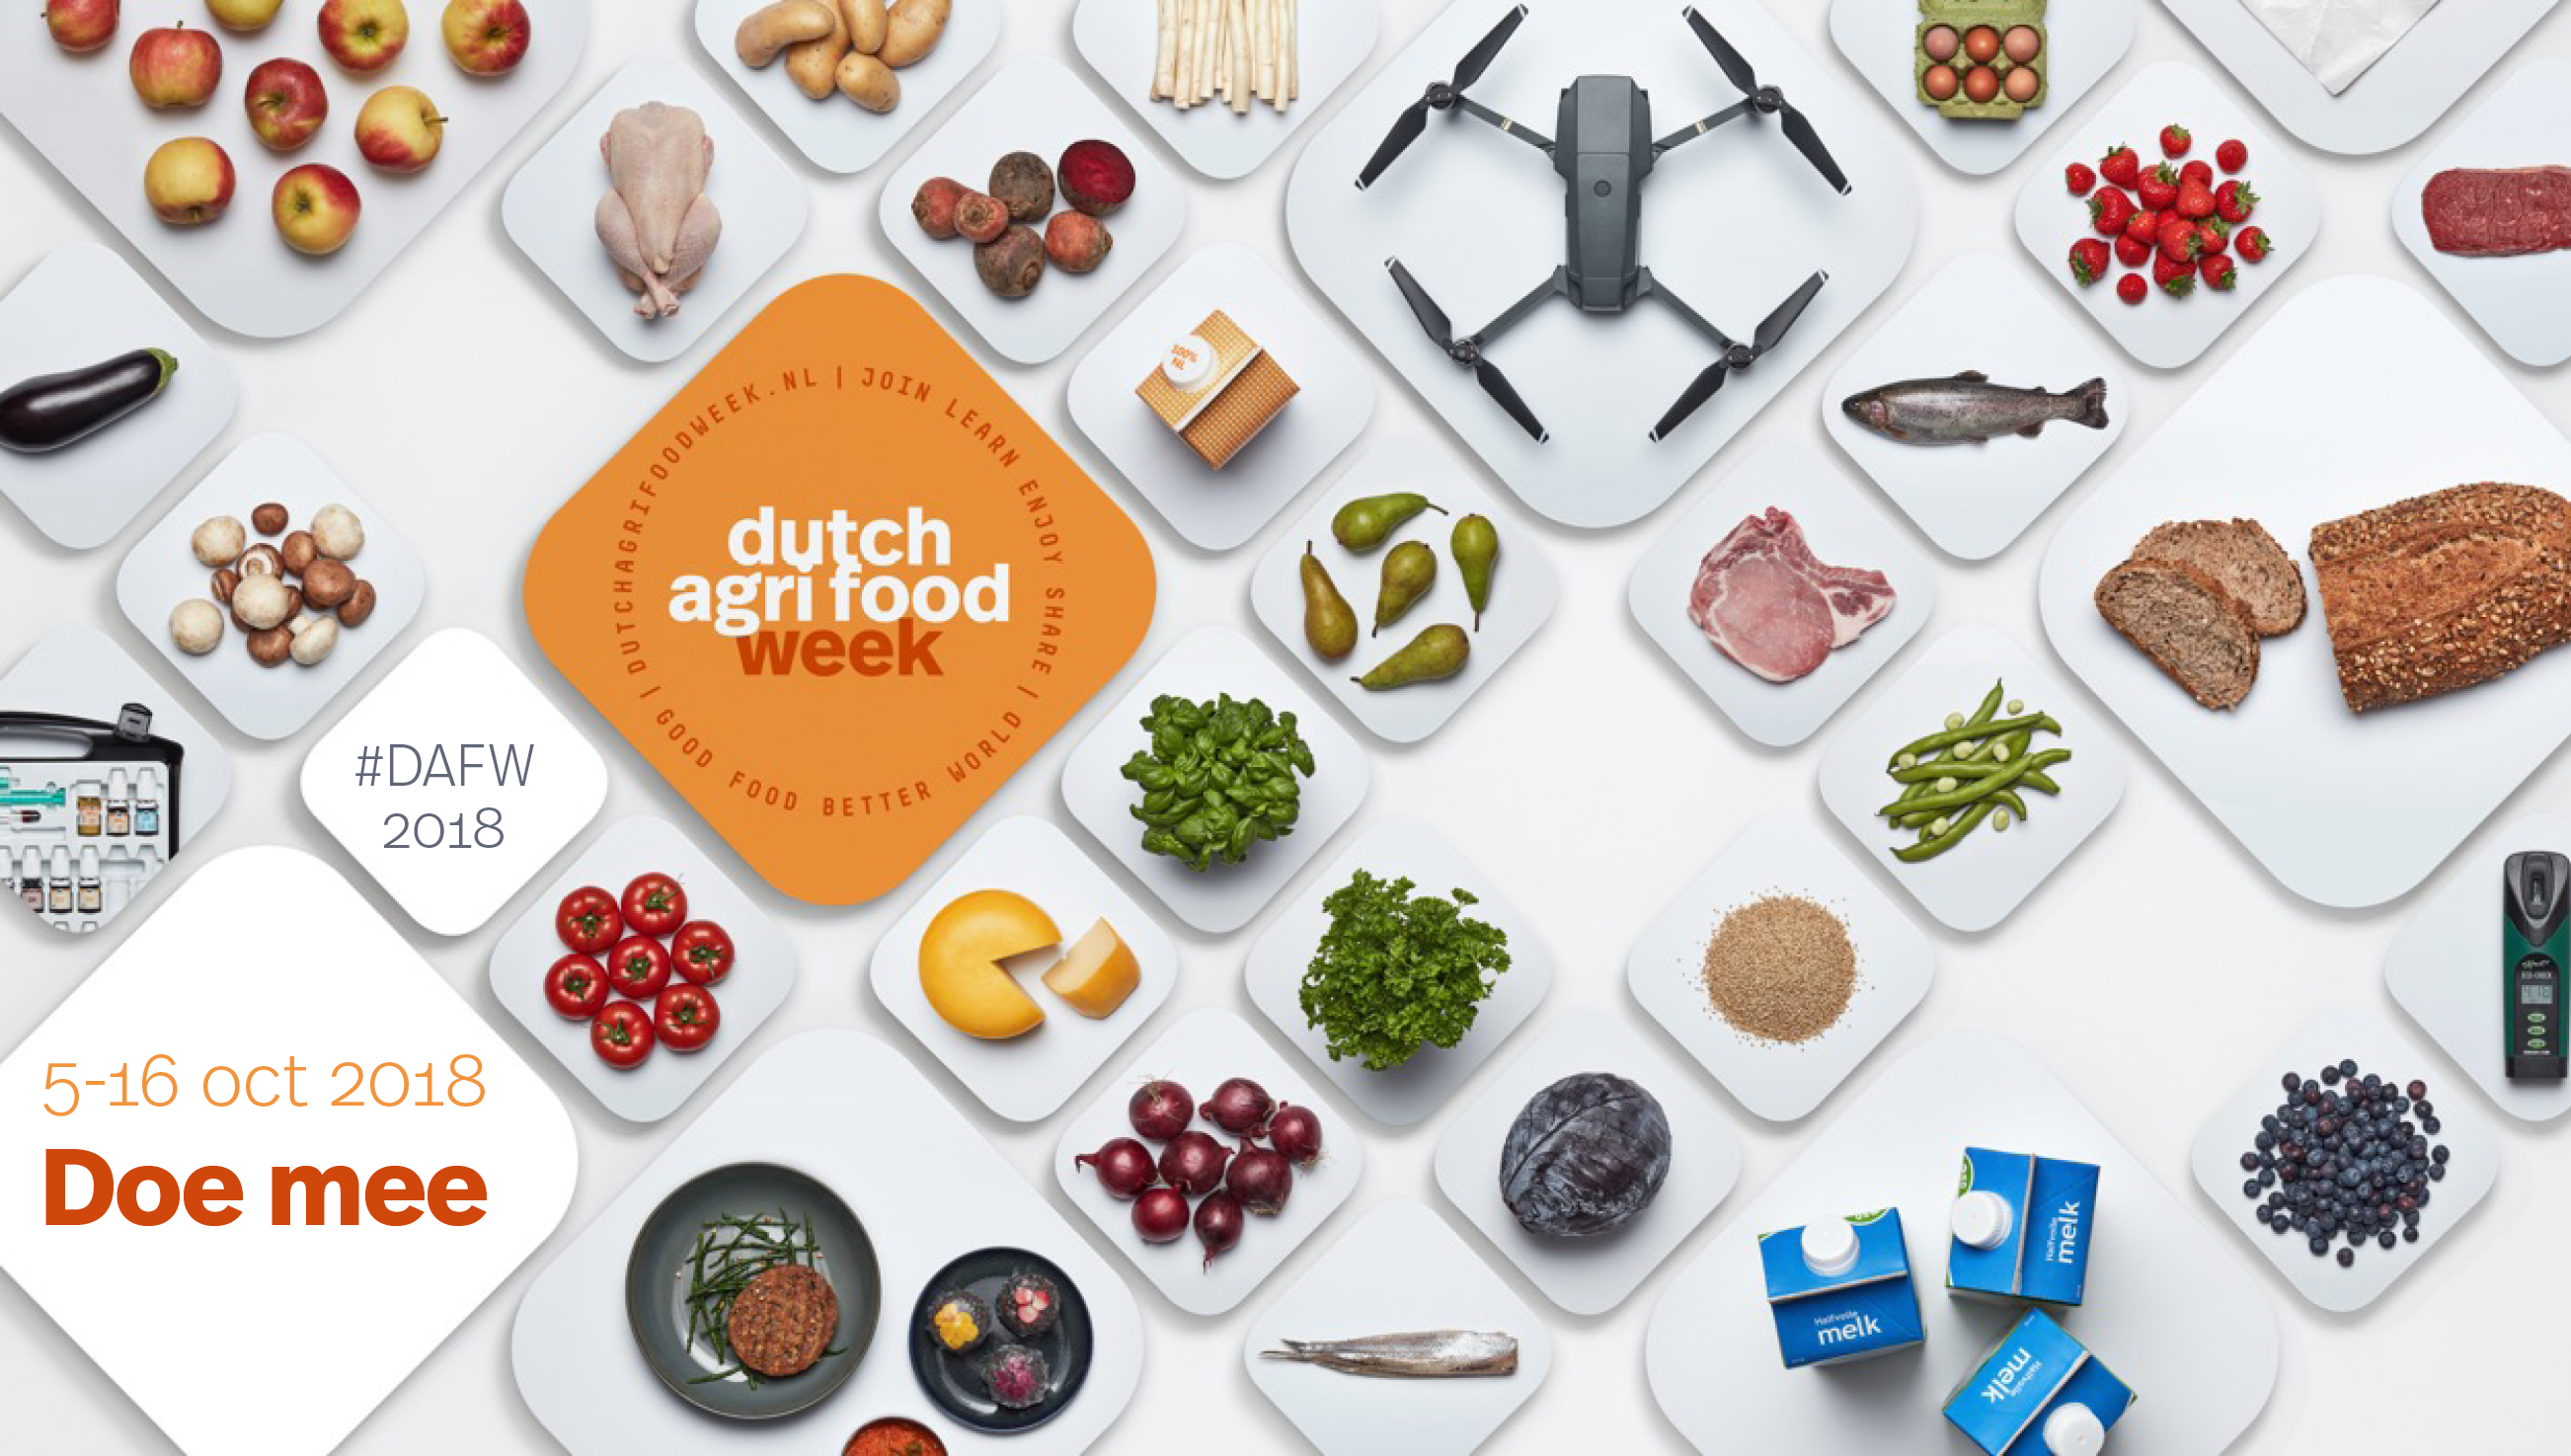 Dutch Agri Food Week